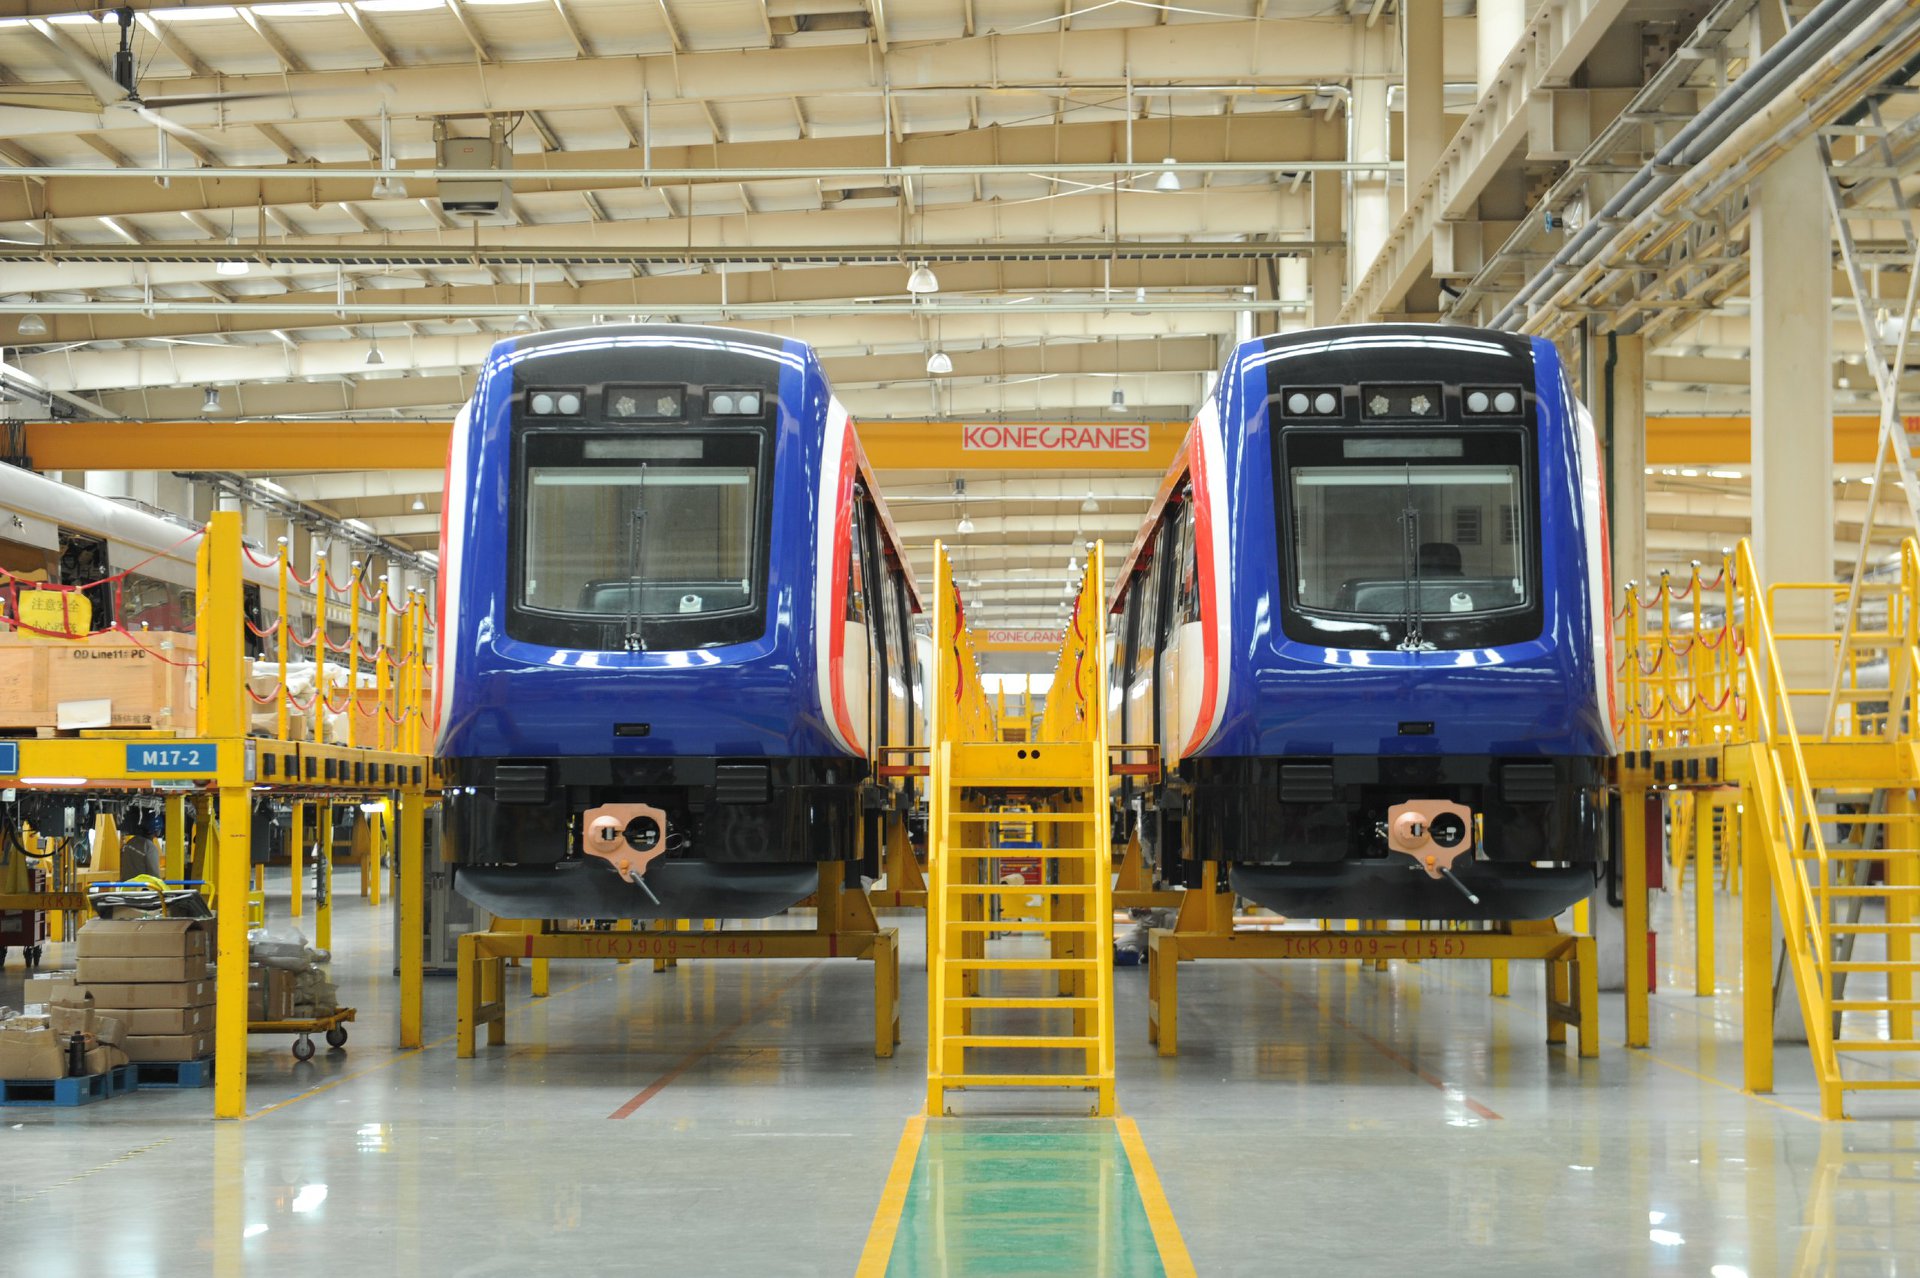 Se espera que estos trenes entren en operación en el segundo trimestre de 2021 para brindar servicio en el área metropolitana. (Foto Prensa Libre: Presidencia de Costa Rica)